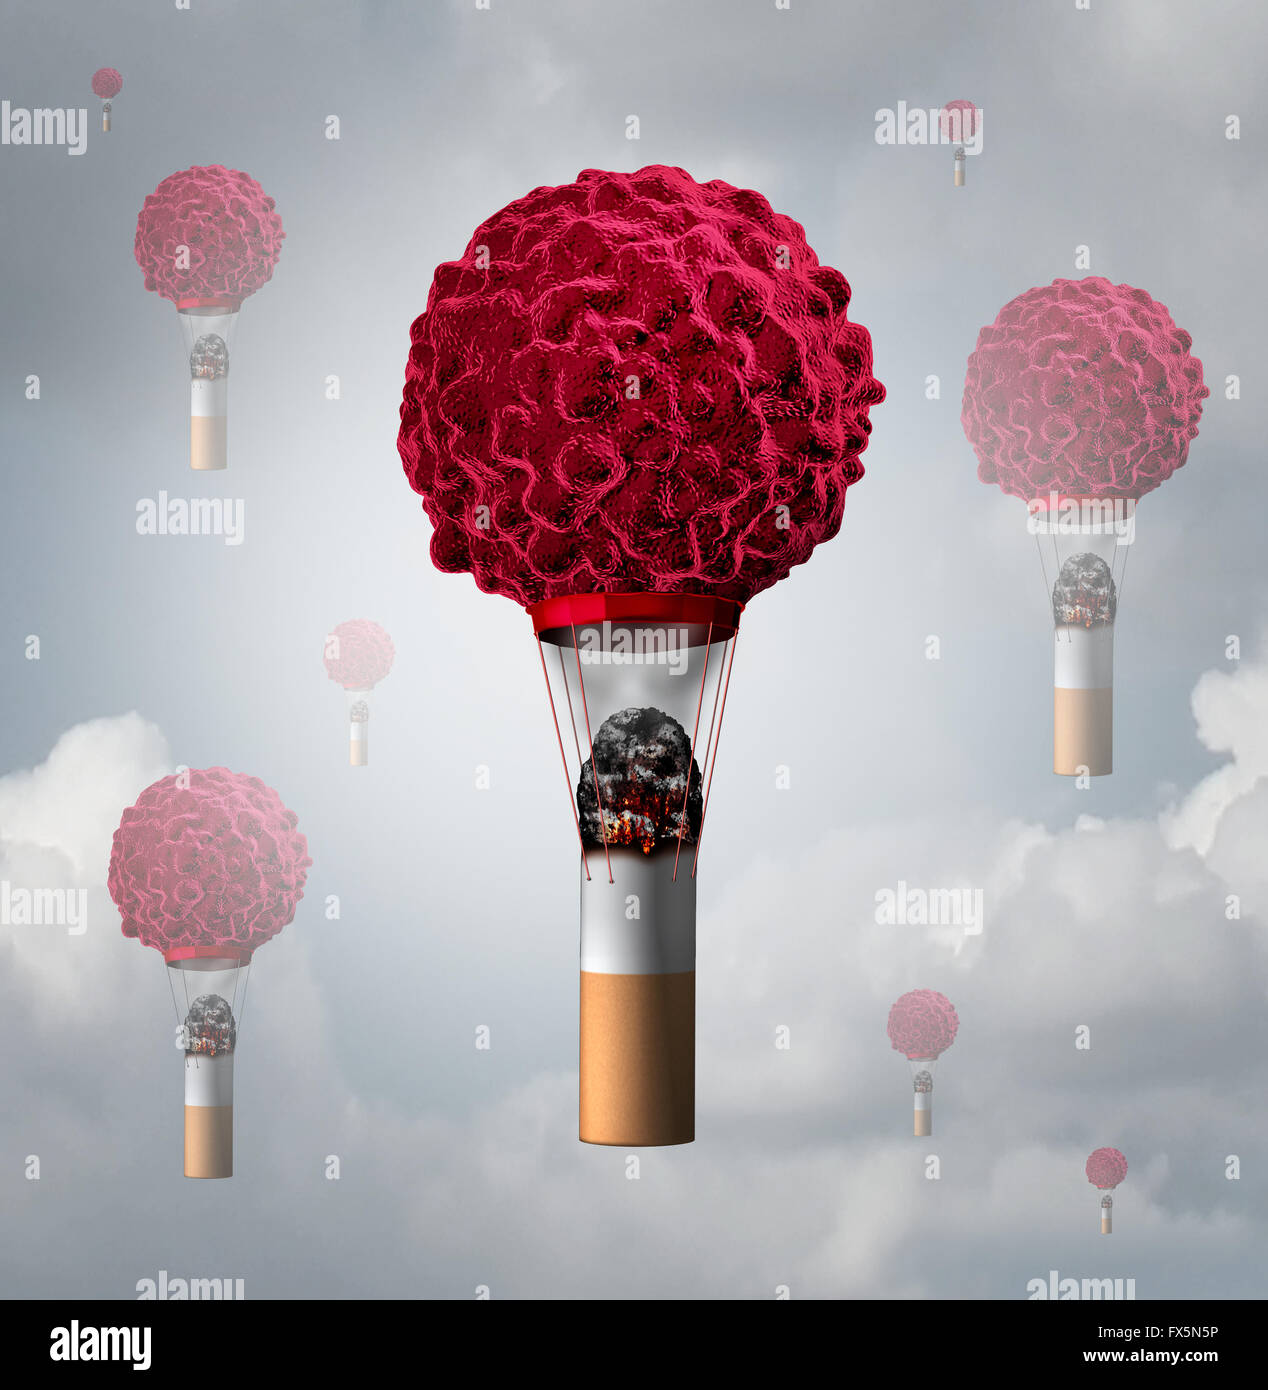 Rauchen Krebs Gesundheitswesen Konzept als eine menschliche Krebszelle, geformt wie ein Luftballon mit einem beleuchteten rauchen Tabak Zigarette Hintern Rauch- und Wärmeabzugsanlagen für das Krebs-Symbol zu schaffen als eine 3D Illustration zu steigen. Stockfoto